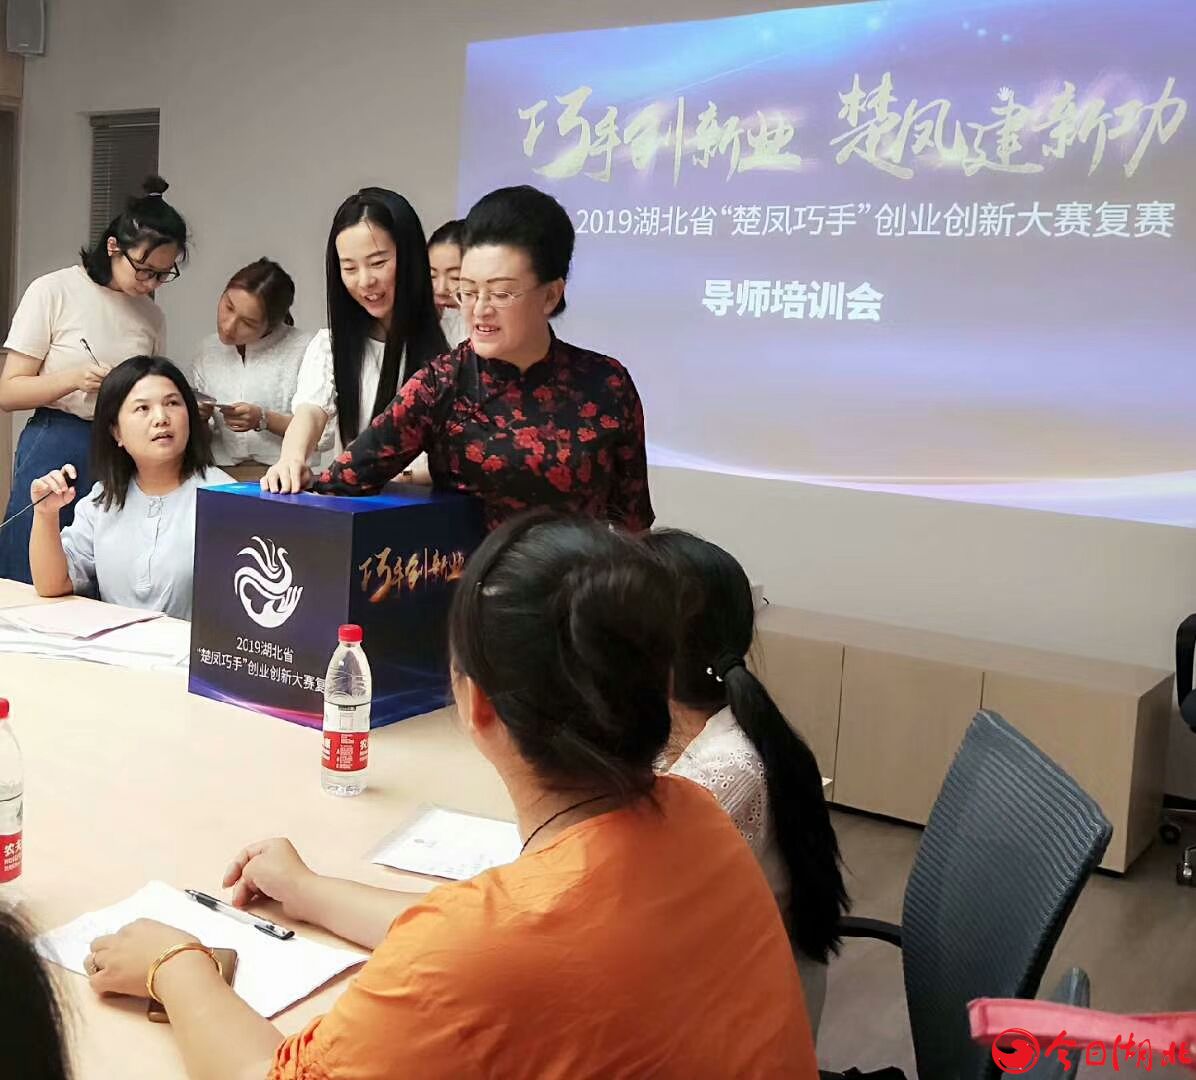 2019年湖北省“楚凤巧手”创业创新大赛复赛在江汉区举行3.jpg